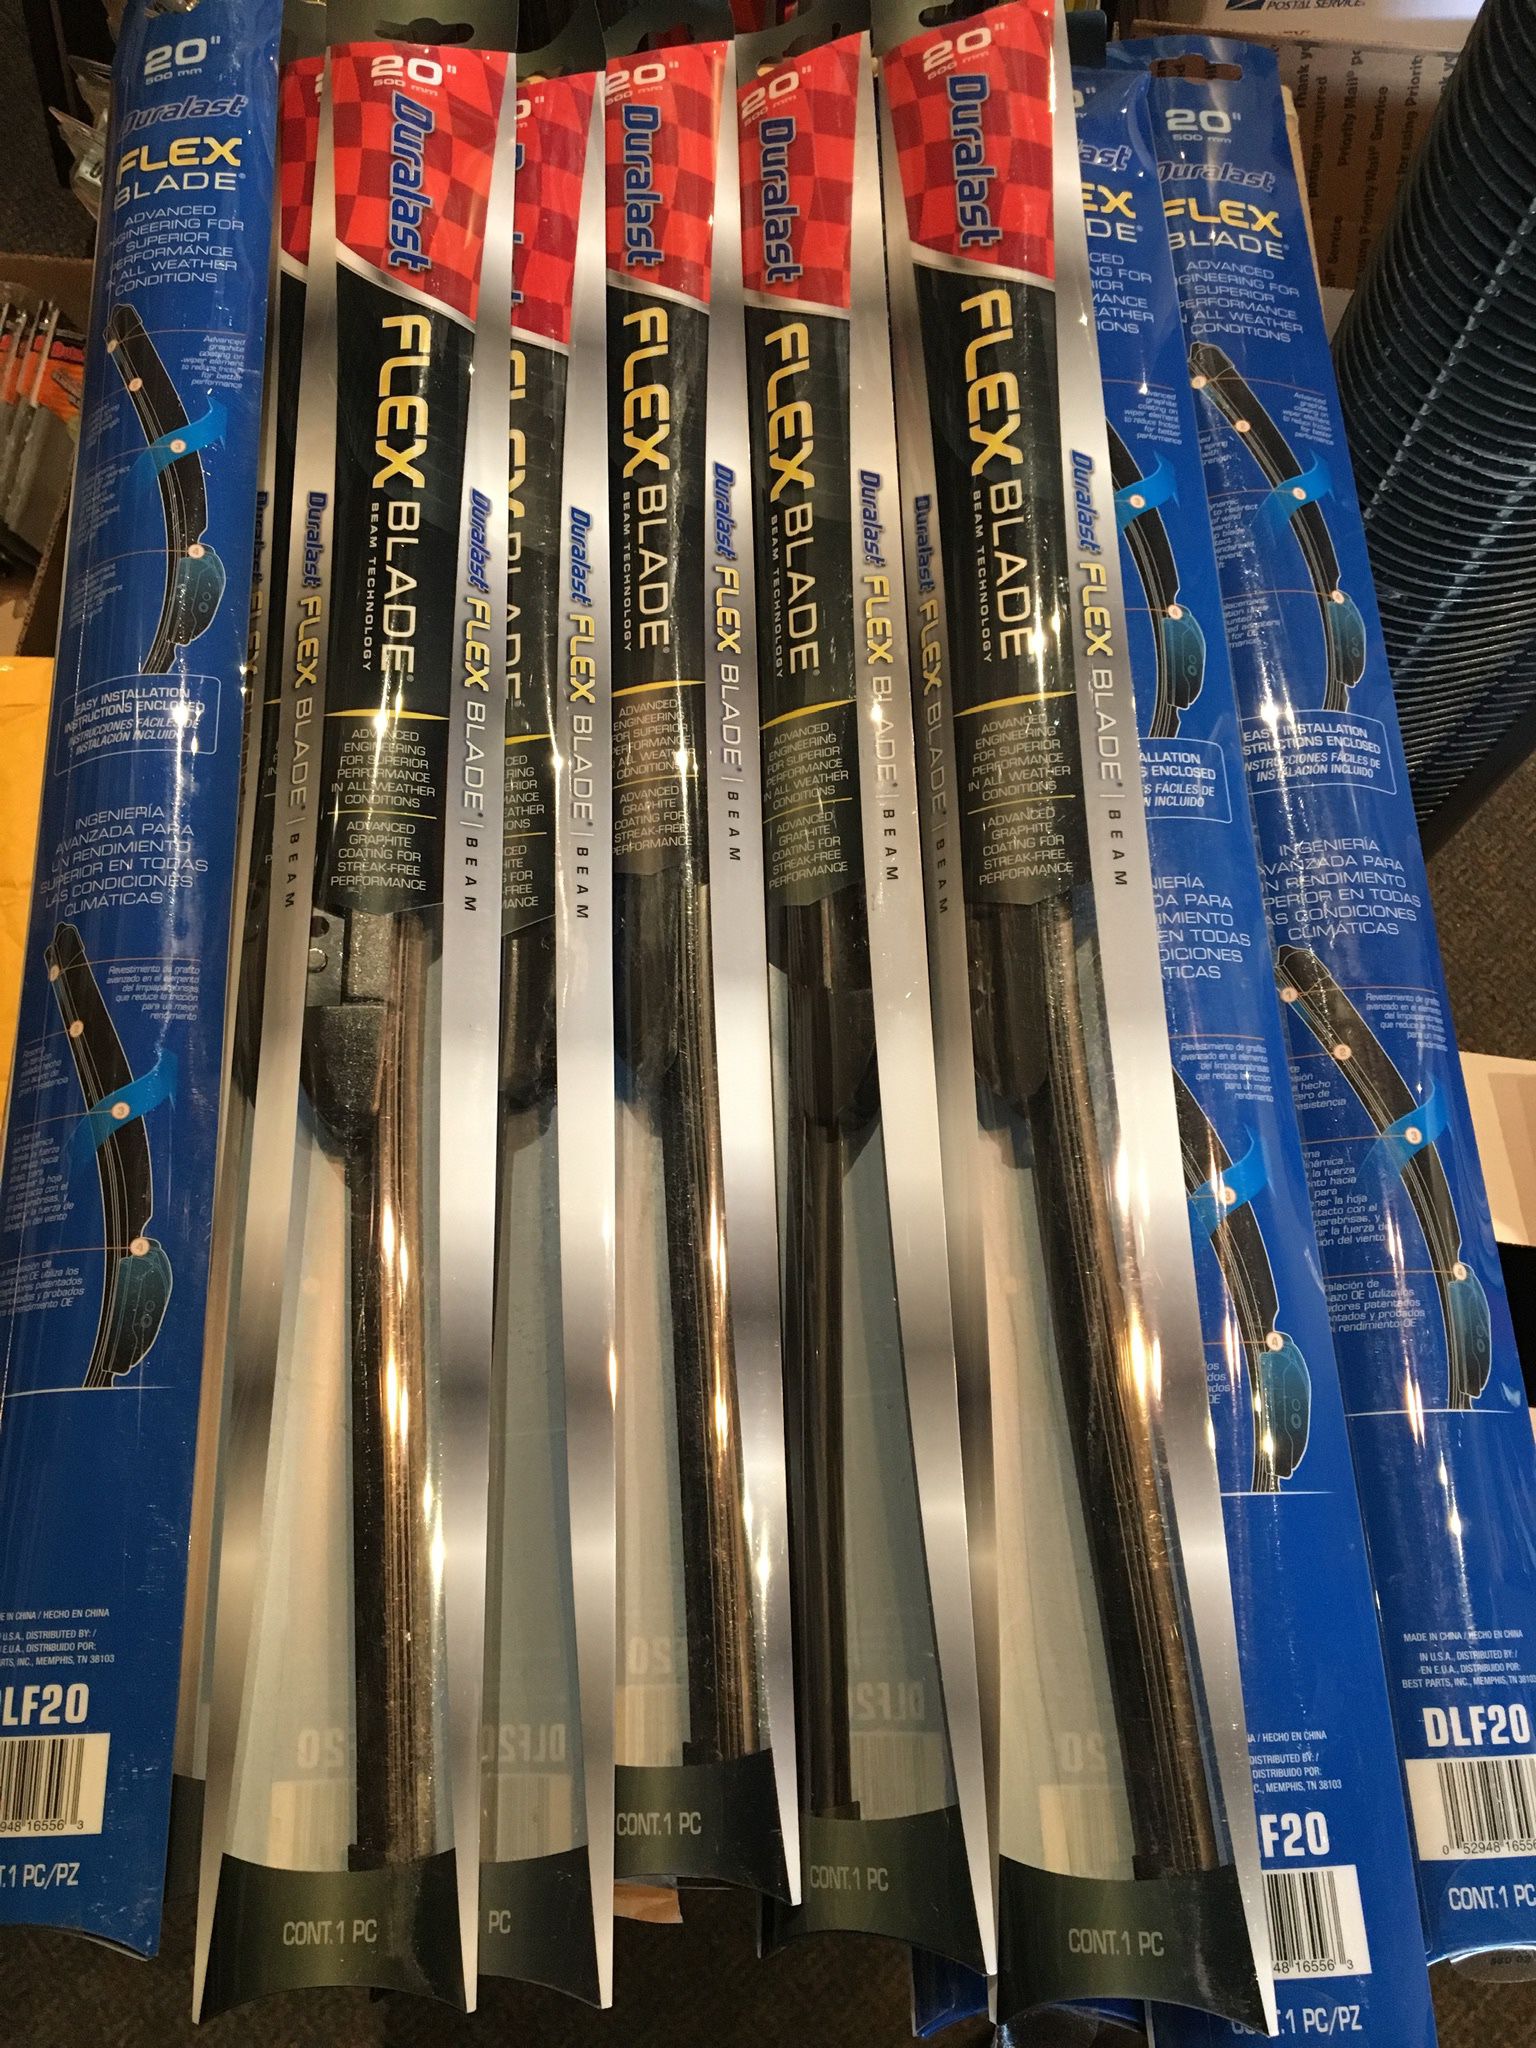 10 X 20 inch Duralast premium wiper blades 